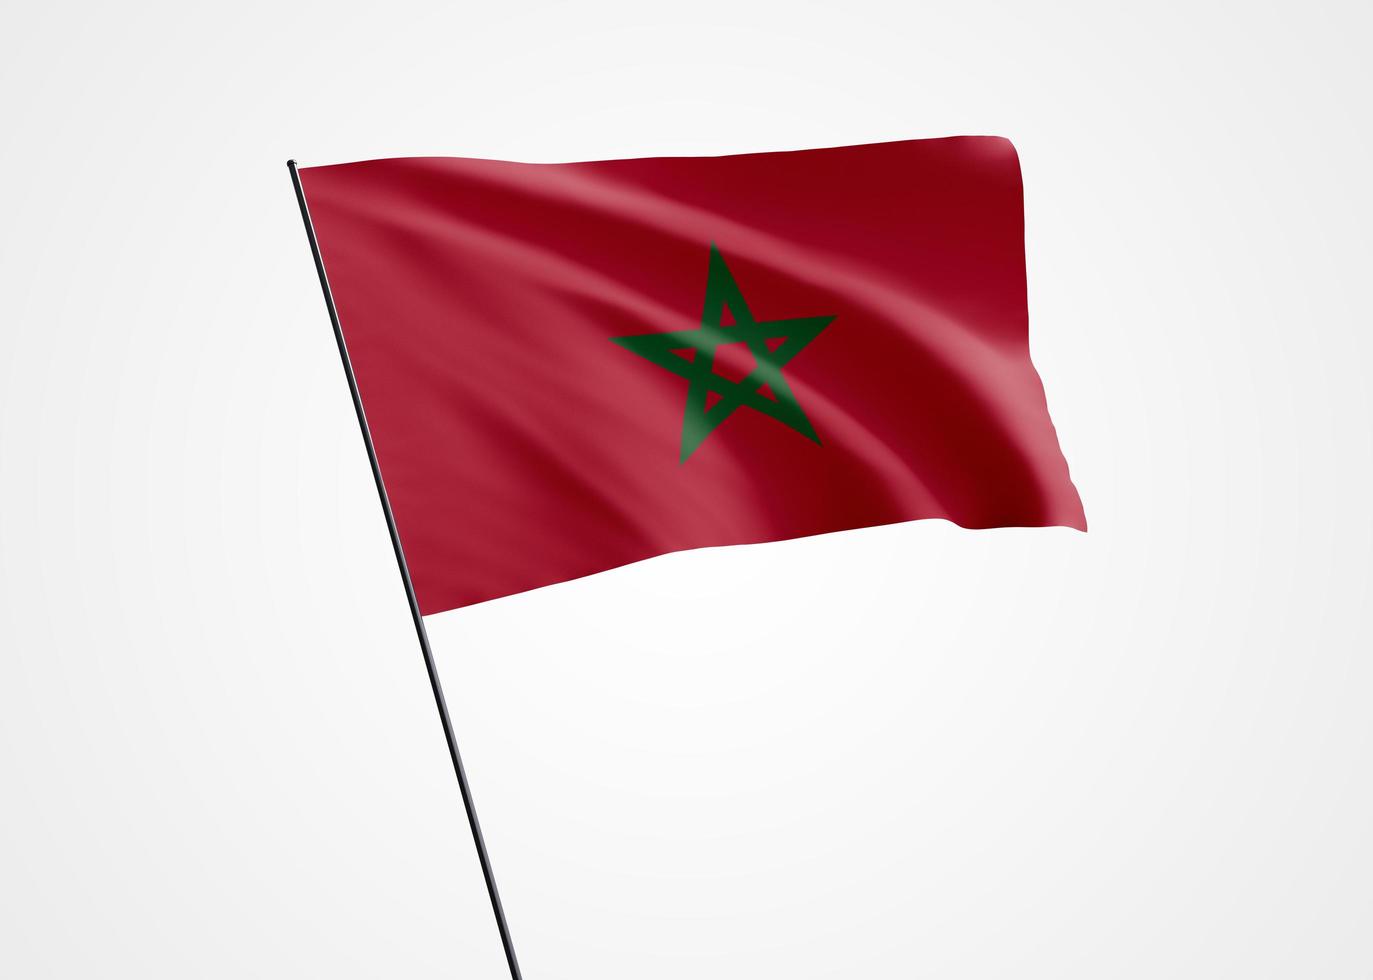 drapeau du maroc volant haut dans l'arrière-plan isolé. 18 novembre fête de l'indépendance du maroc. collection de drapeaux nationaux du monde collection de drapeaux nationaux du monde photo